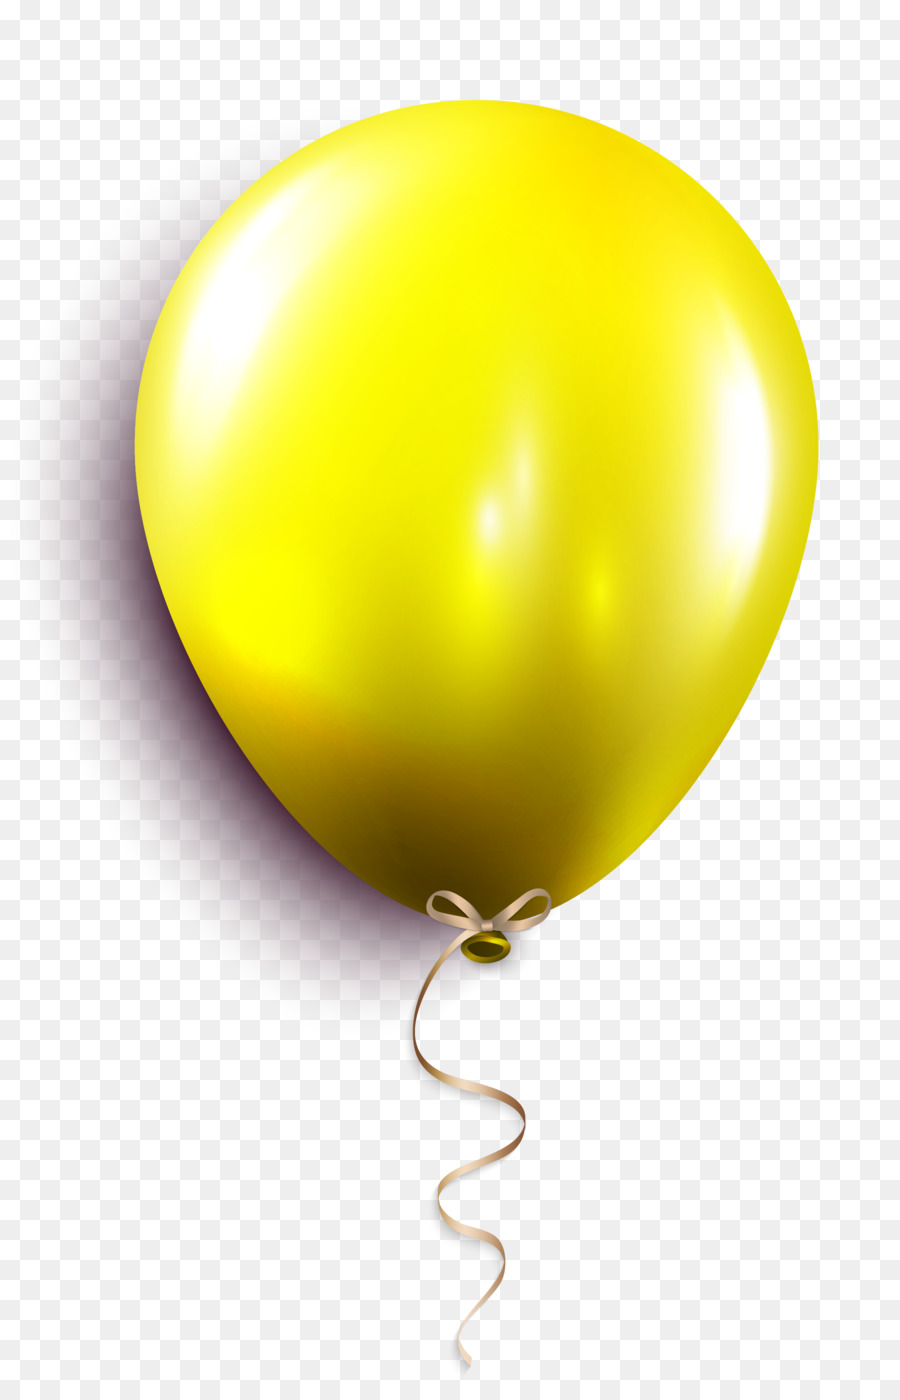 Il Palloncino Giallo Sfera - Piccolo croccante palloncino giallo